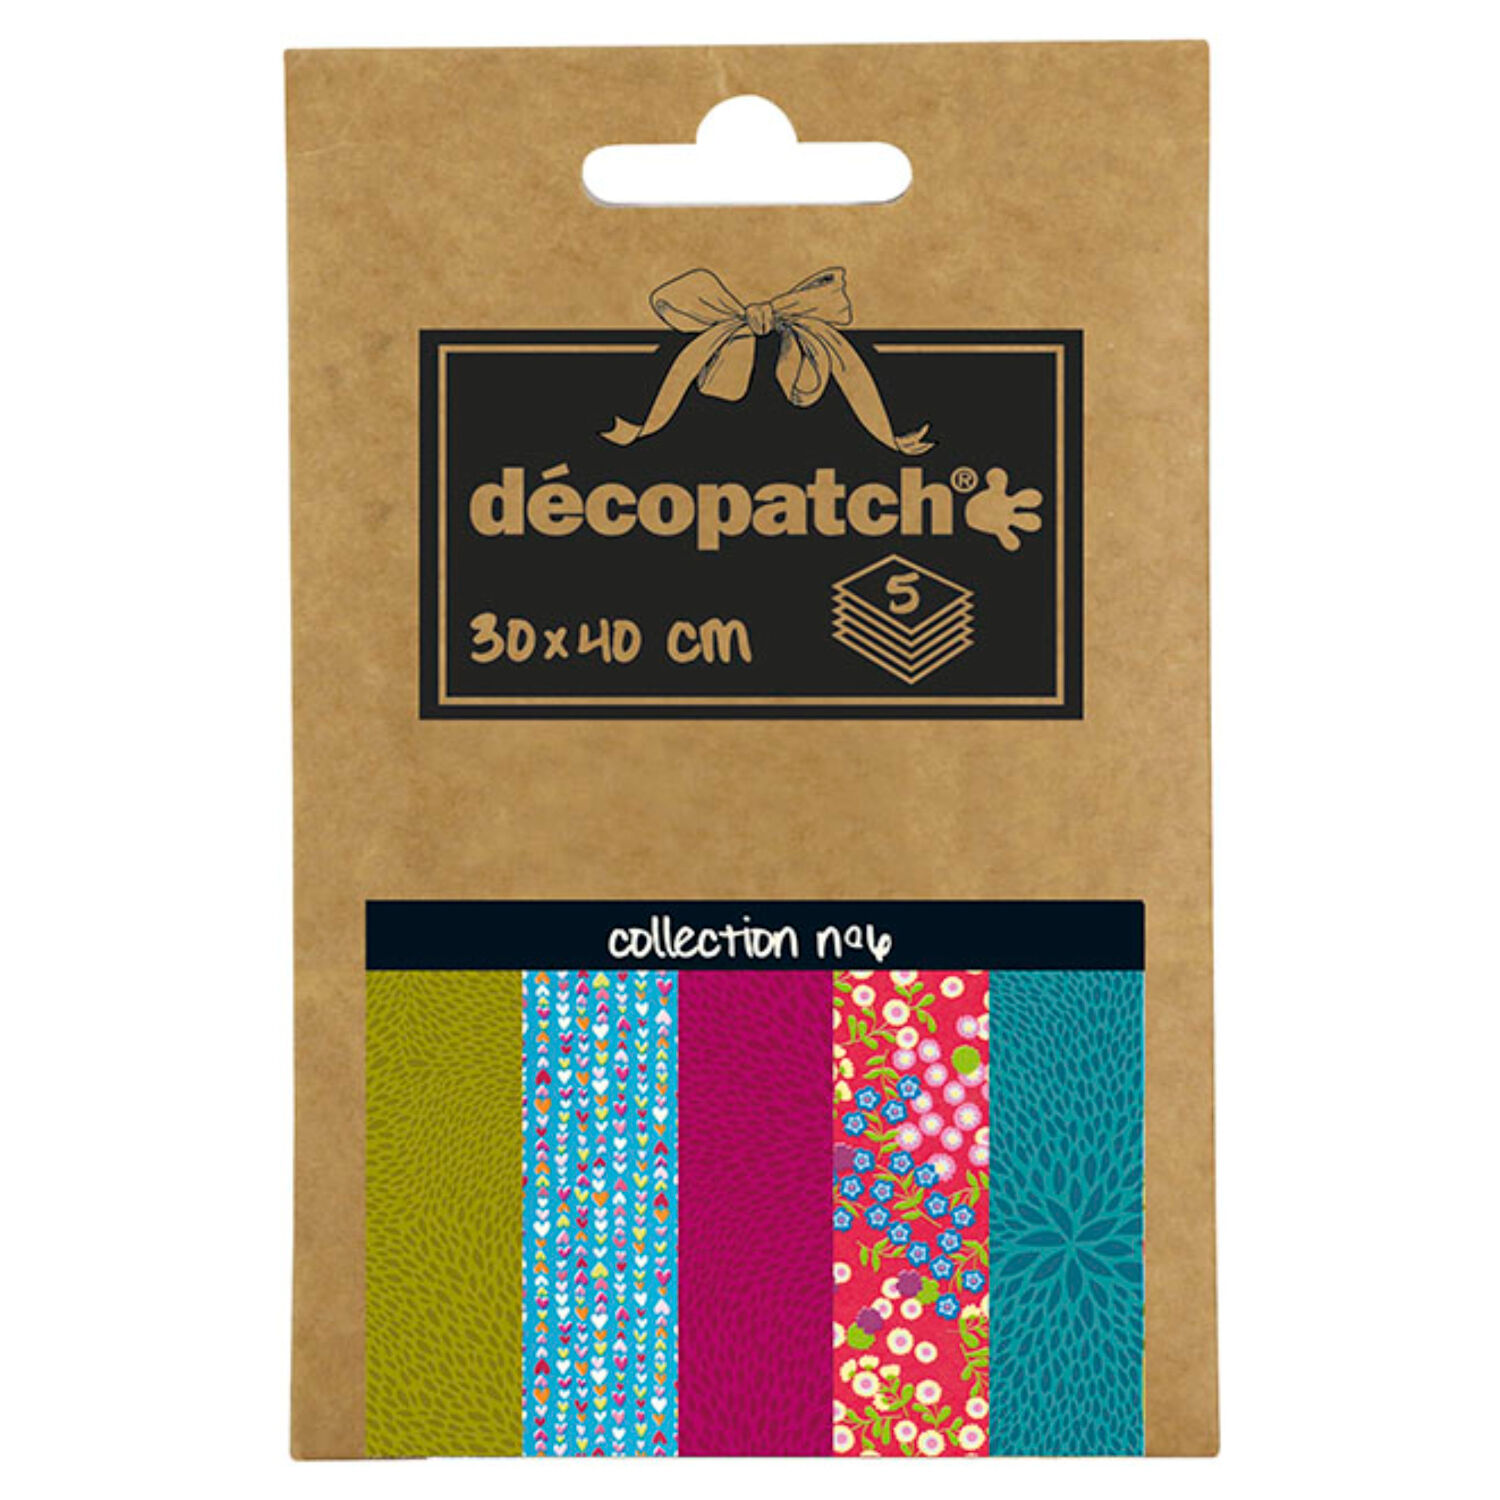 NEU Decoupage- / Decopatch-Papier Pocket-Sortierung, 5 Bogen 30 x 40 cm, Motive: 548, 410, 710, 383, 651